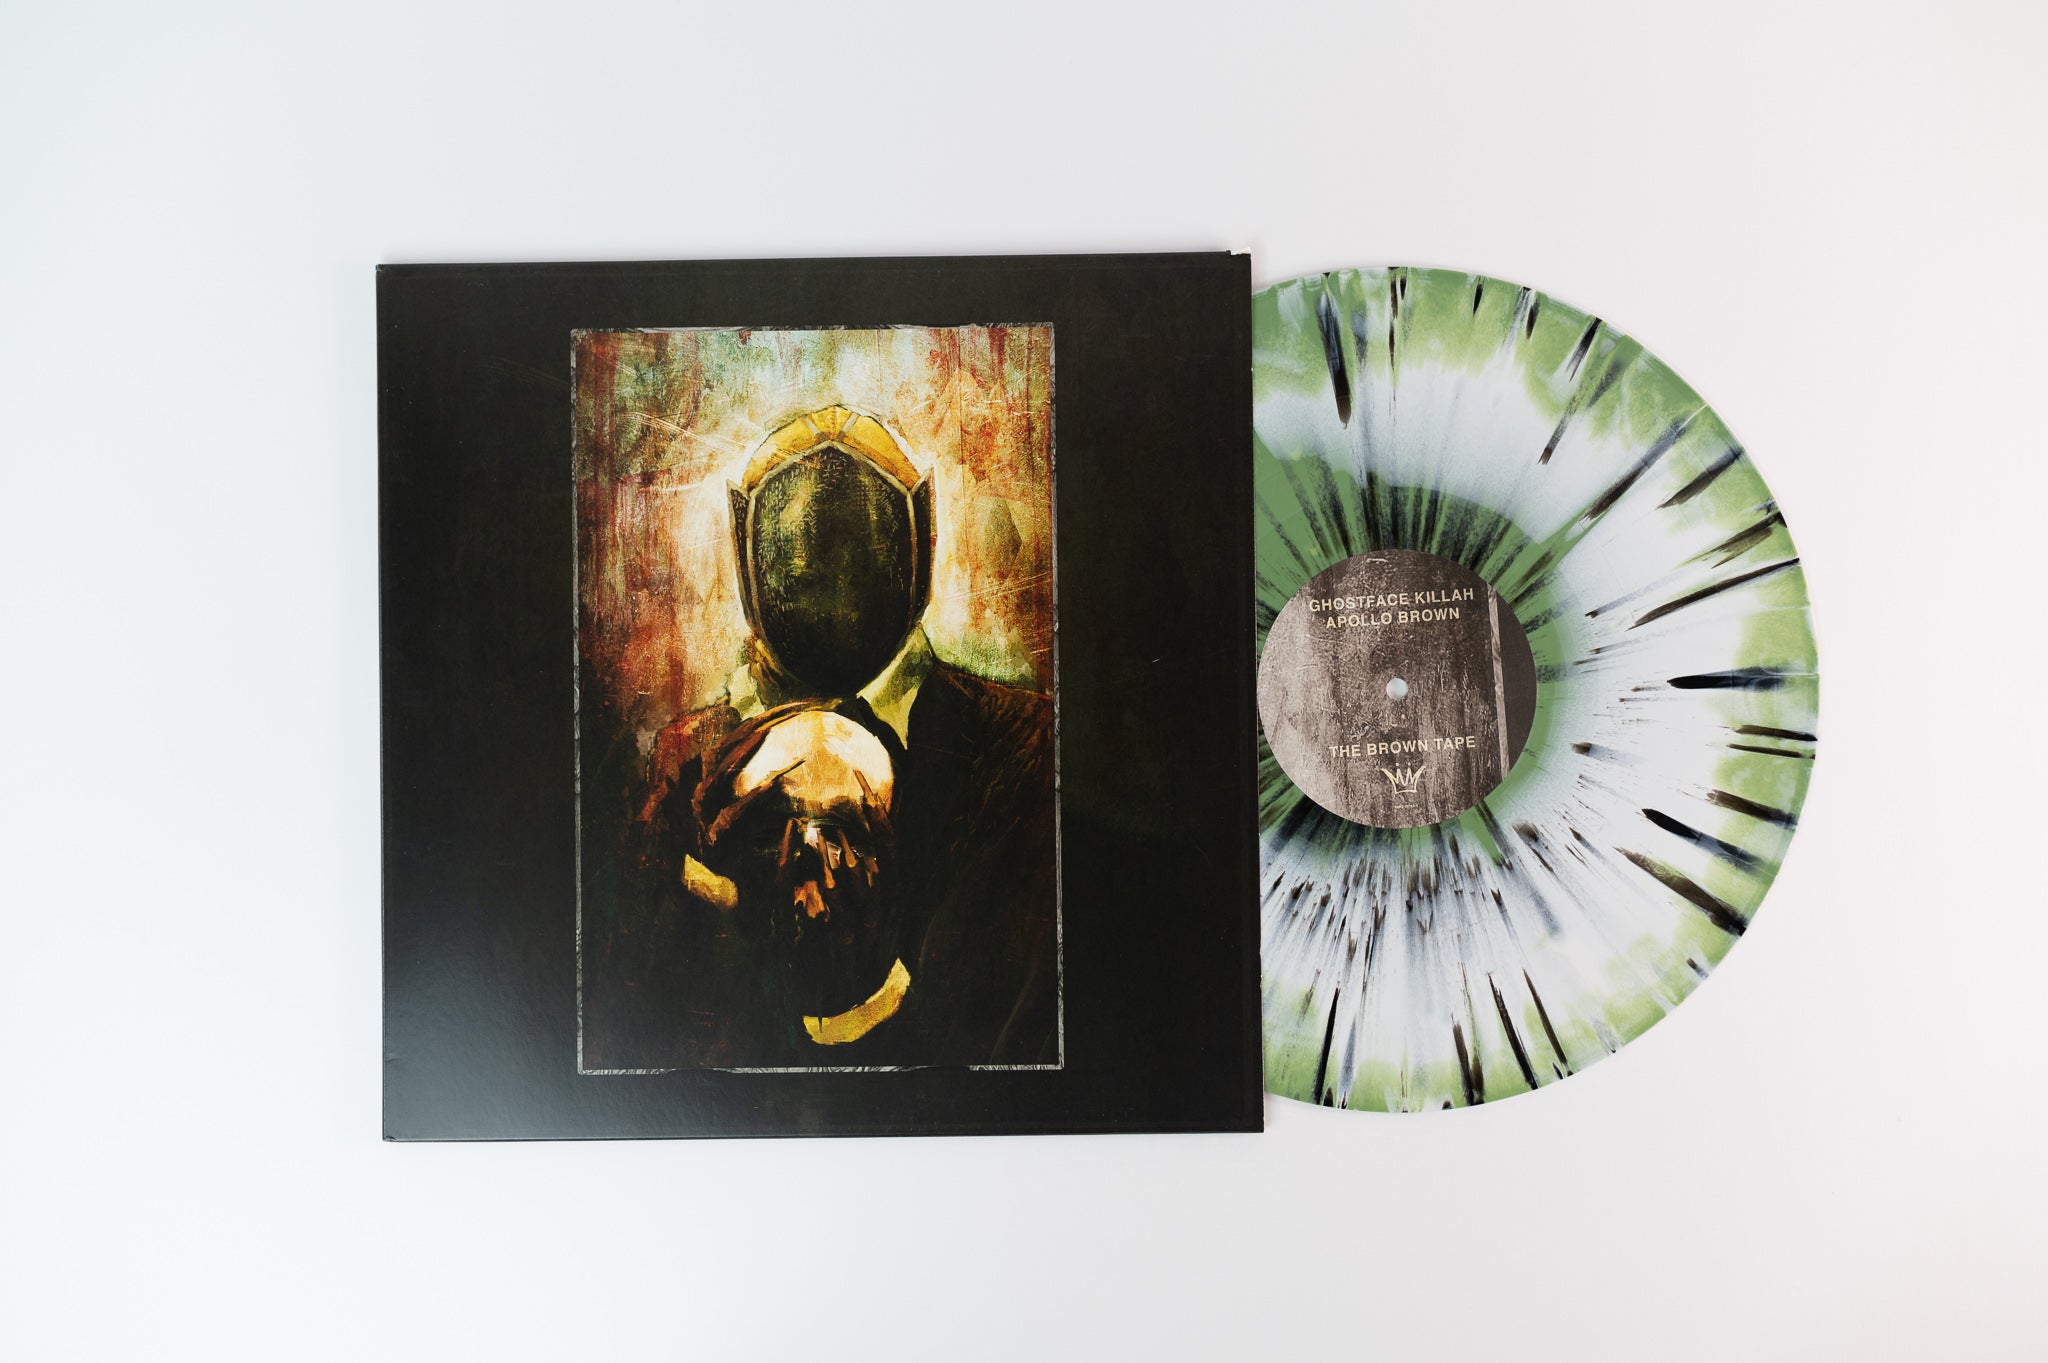 Ghostface Killah - The Brown Tape on Mello Music Group Green White & Black Splatter Vinyl Reissue